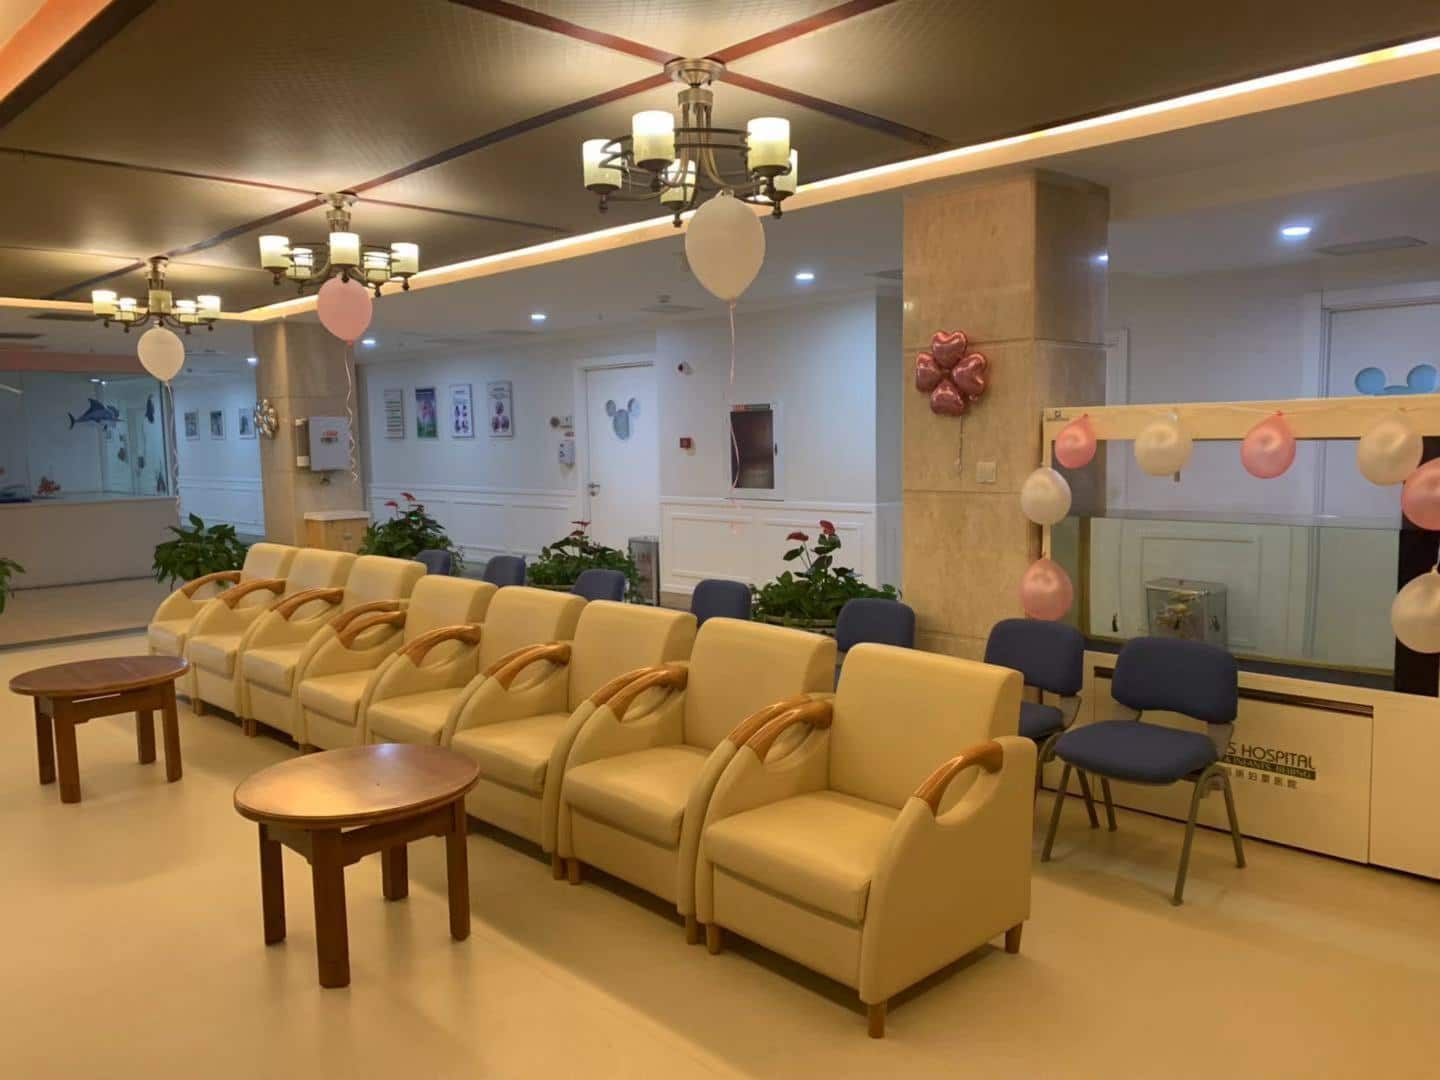 北京玛丽妇婴医院